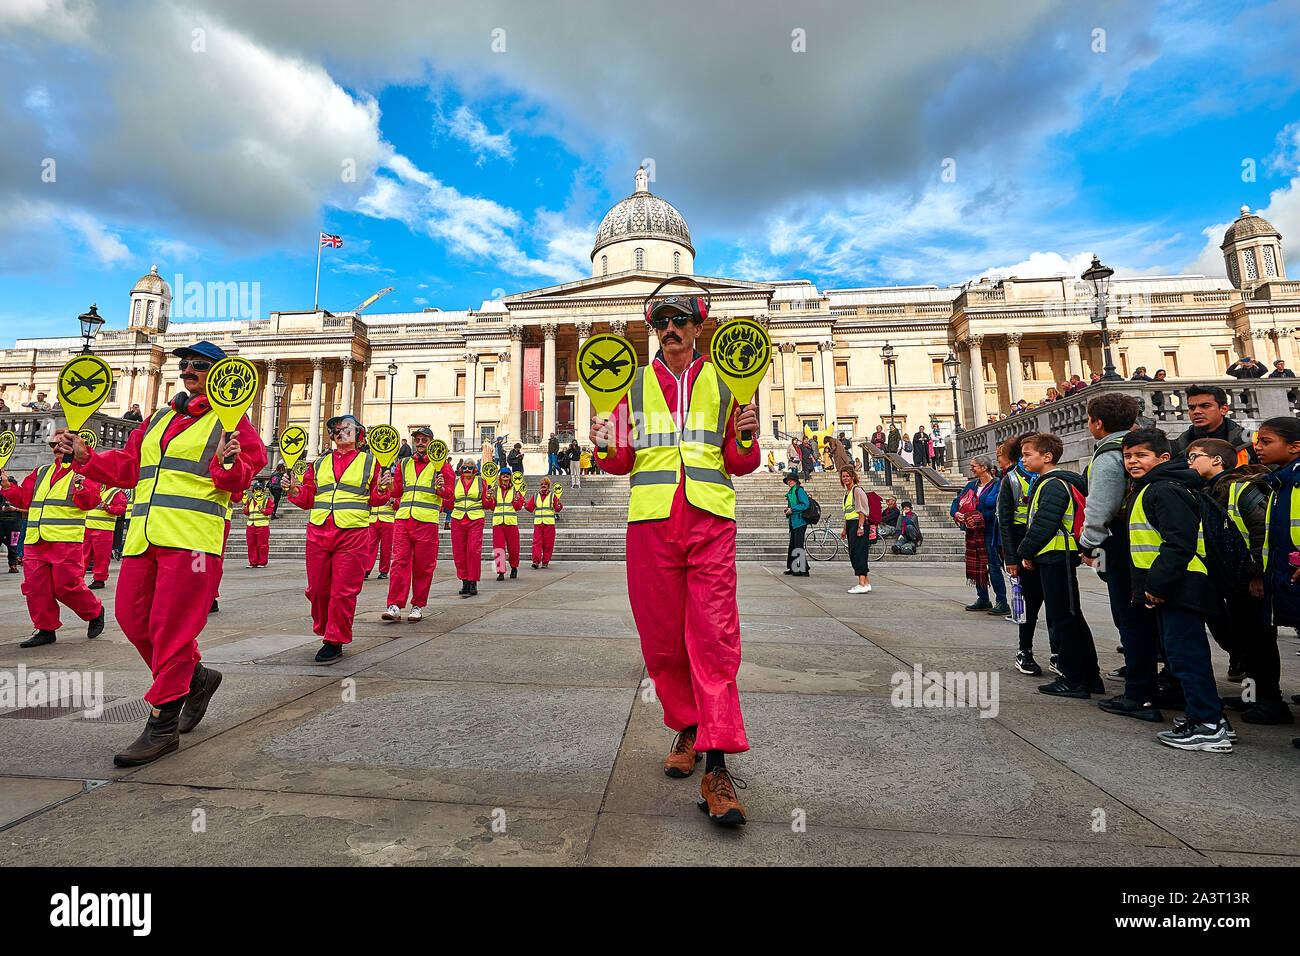 Londres, Reino Unido - Oct 9, 2019: activistas ambientales de la extinción rebelión vestidos como trabajadores de aterrizaje en Trafalgar Square para protestar contra los viajes aéreos. Foto de stock